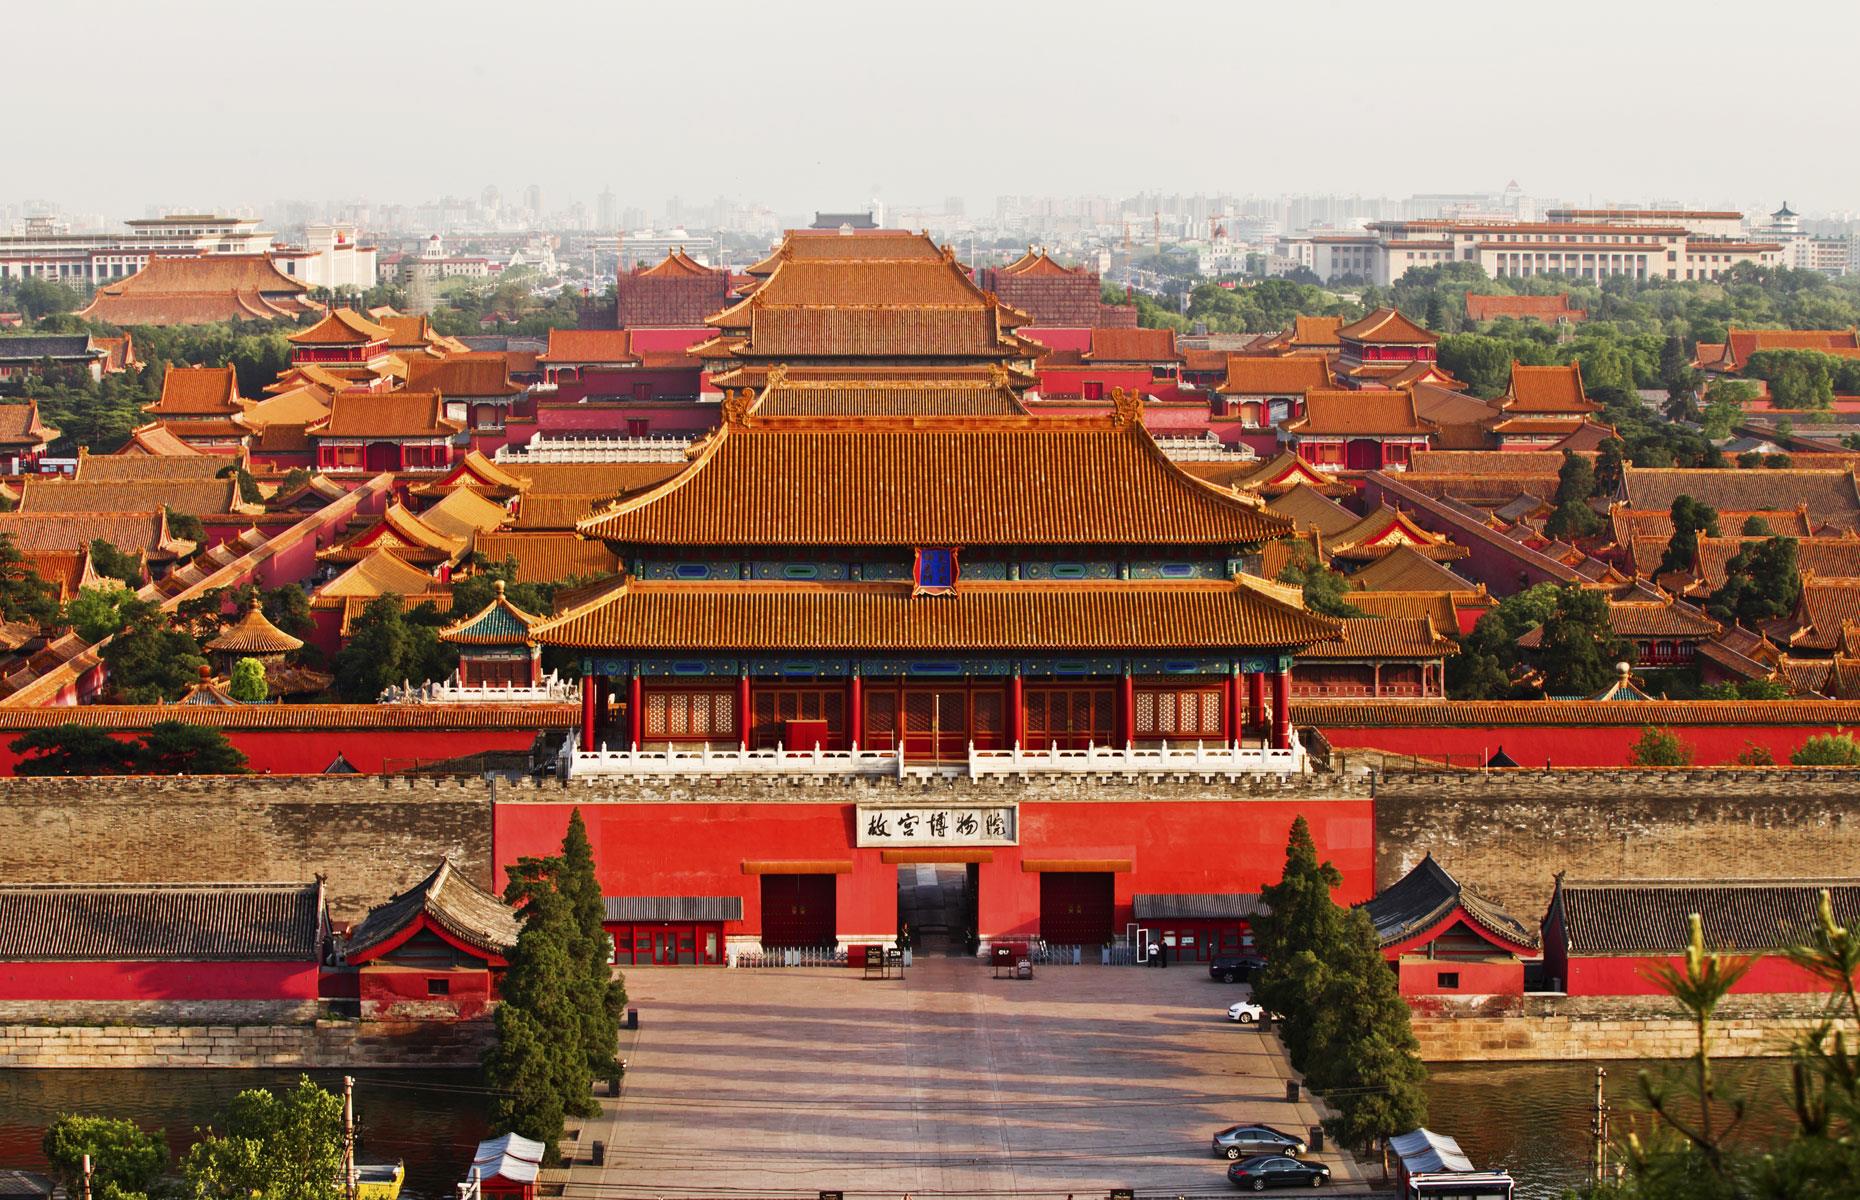 Forbidden City, China – $69.66 billion+ (£53bn+)